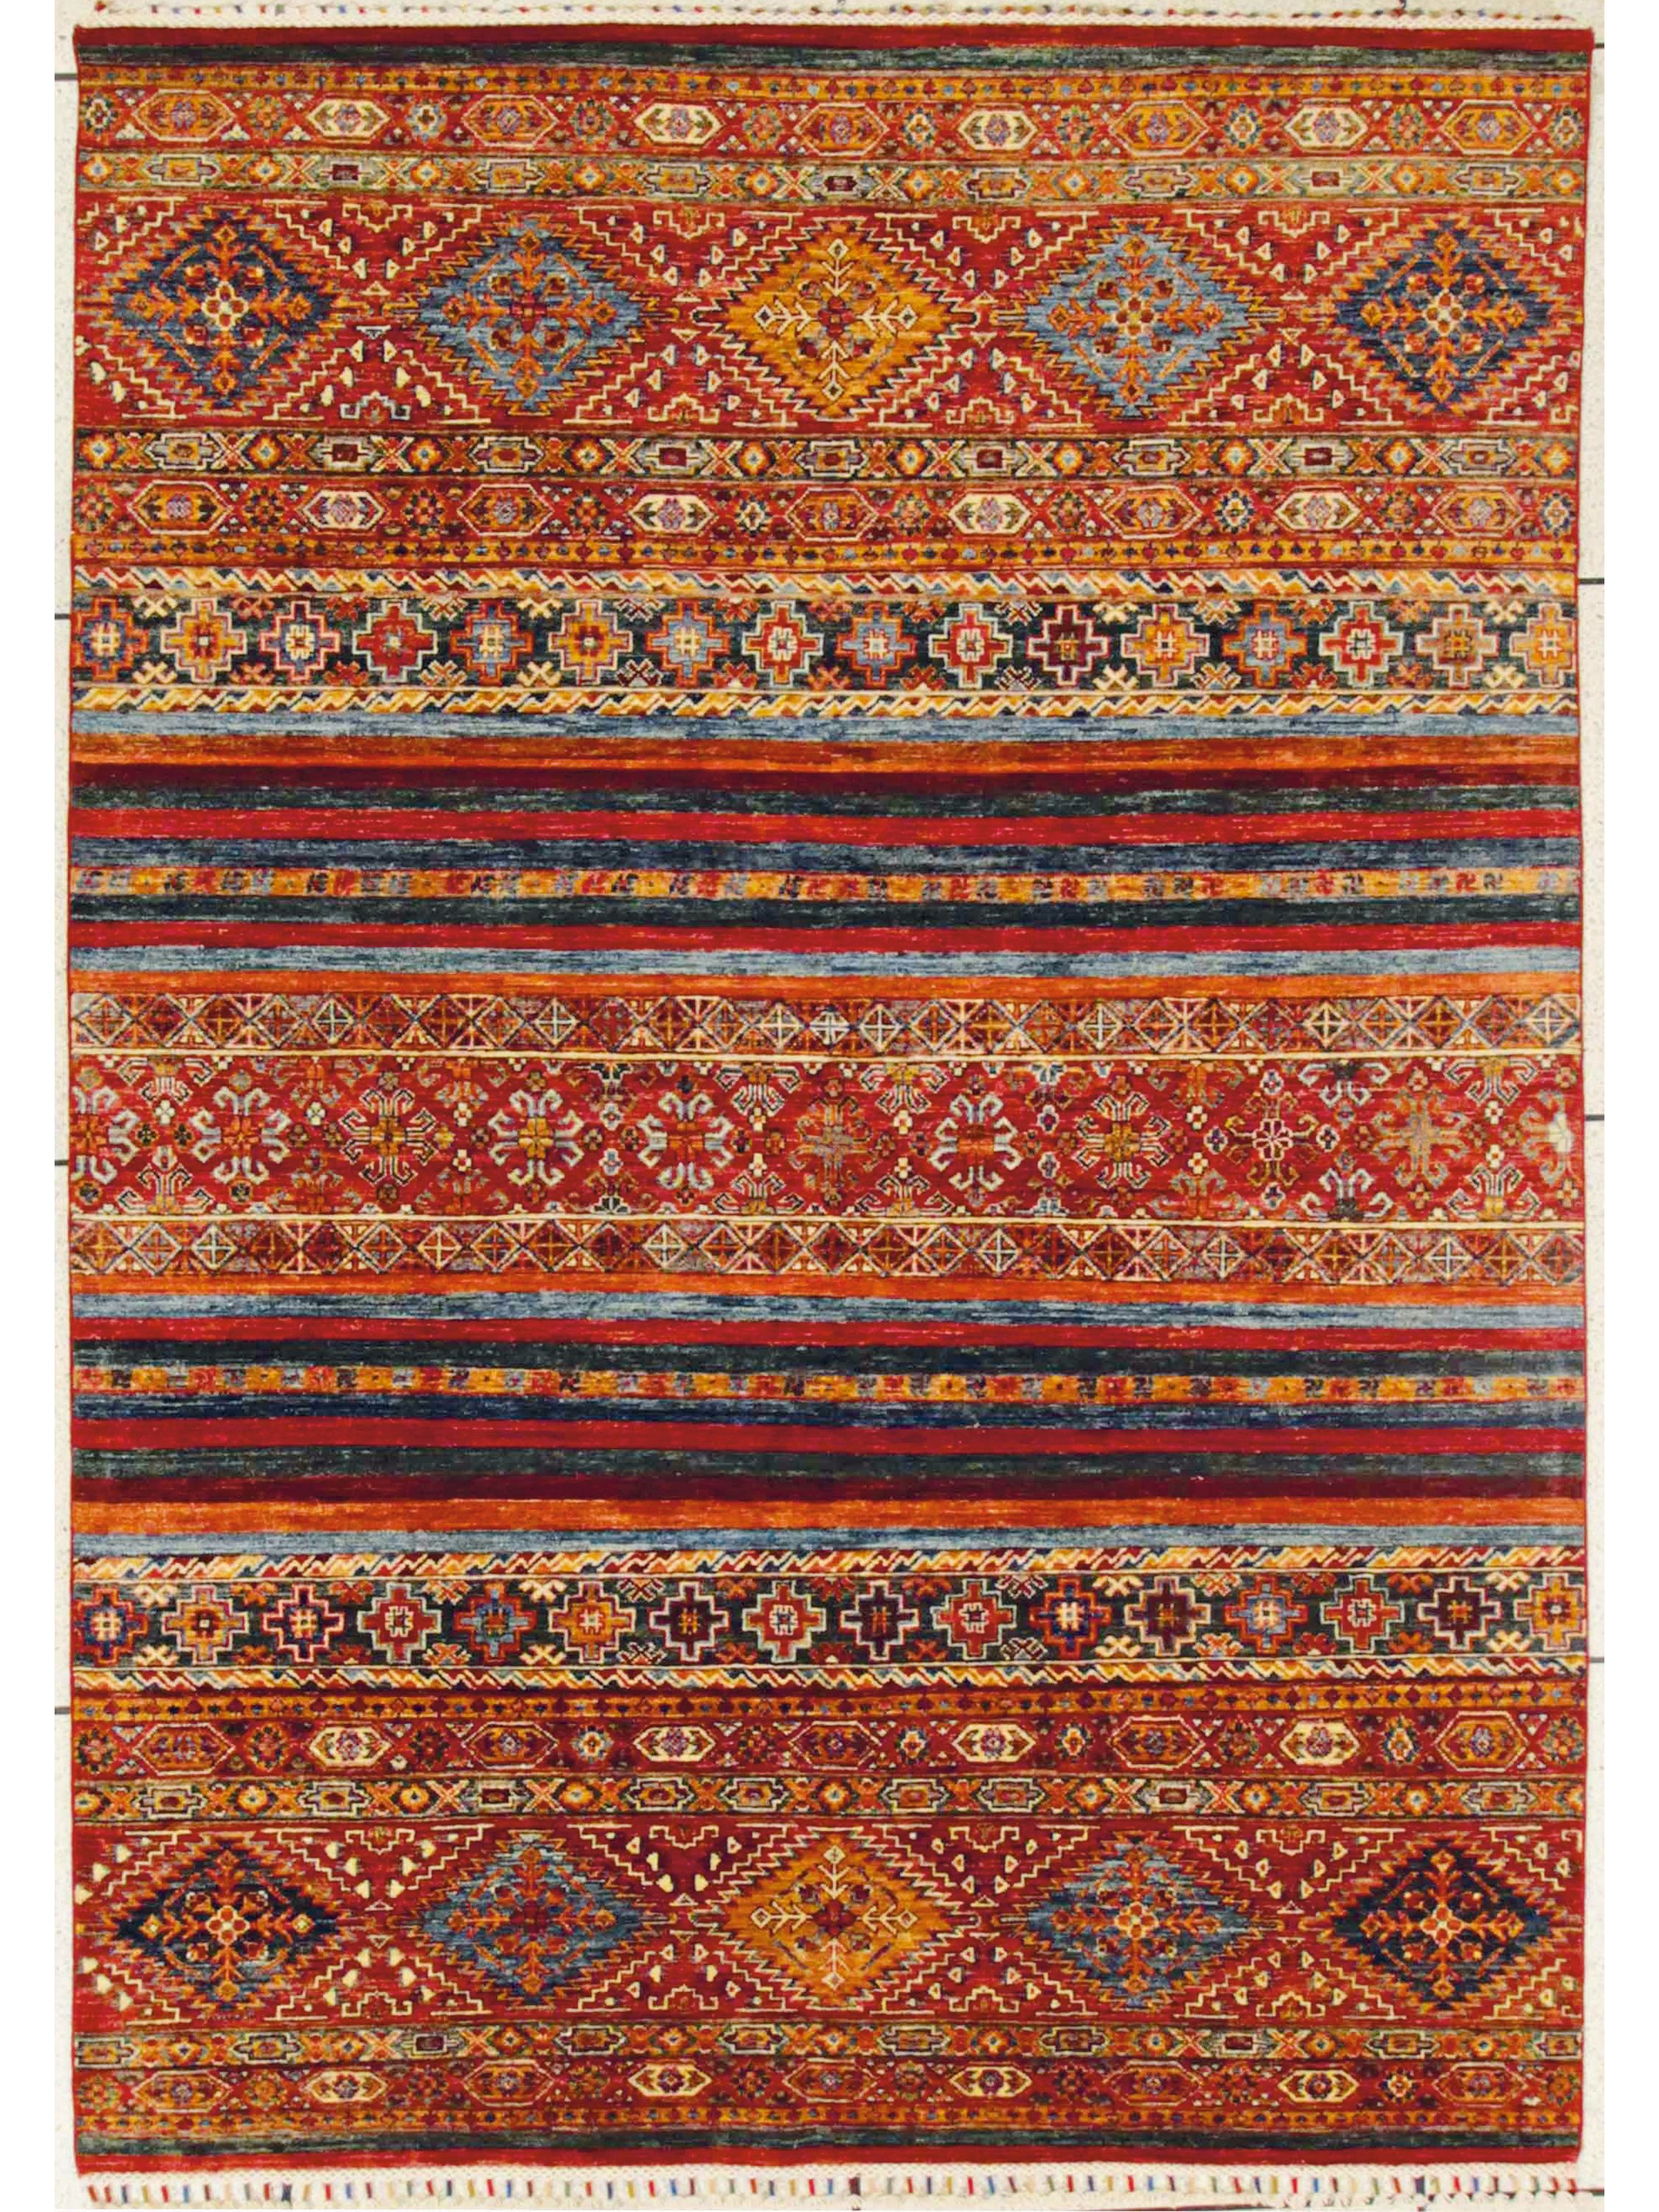 Teppich Pakistan LEGEND bunt (BL 80x130 cm)